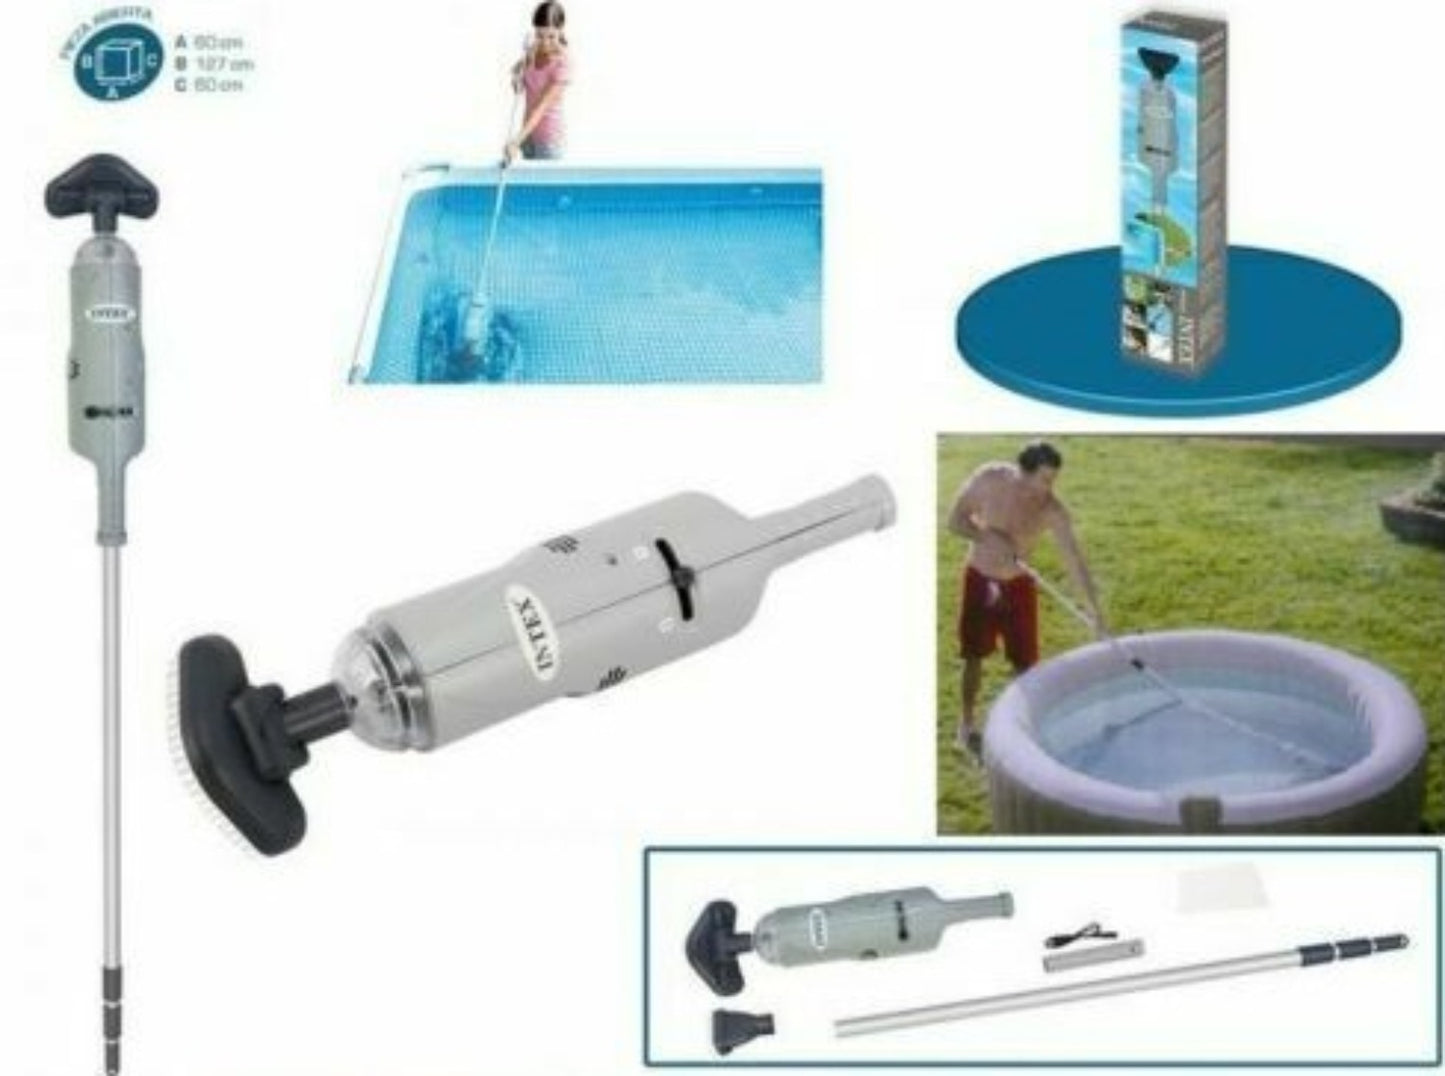 Vacuum aspiratore ricaricabile per piscina e Spa fuori terra Intex 28620